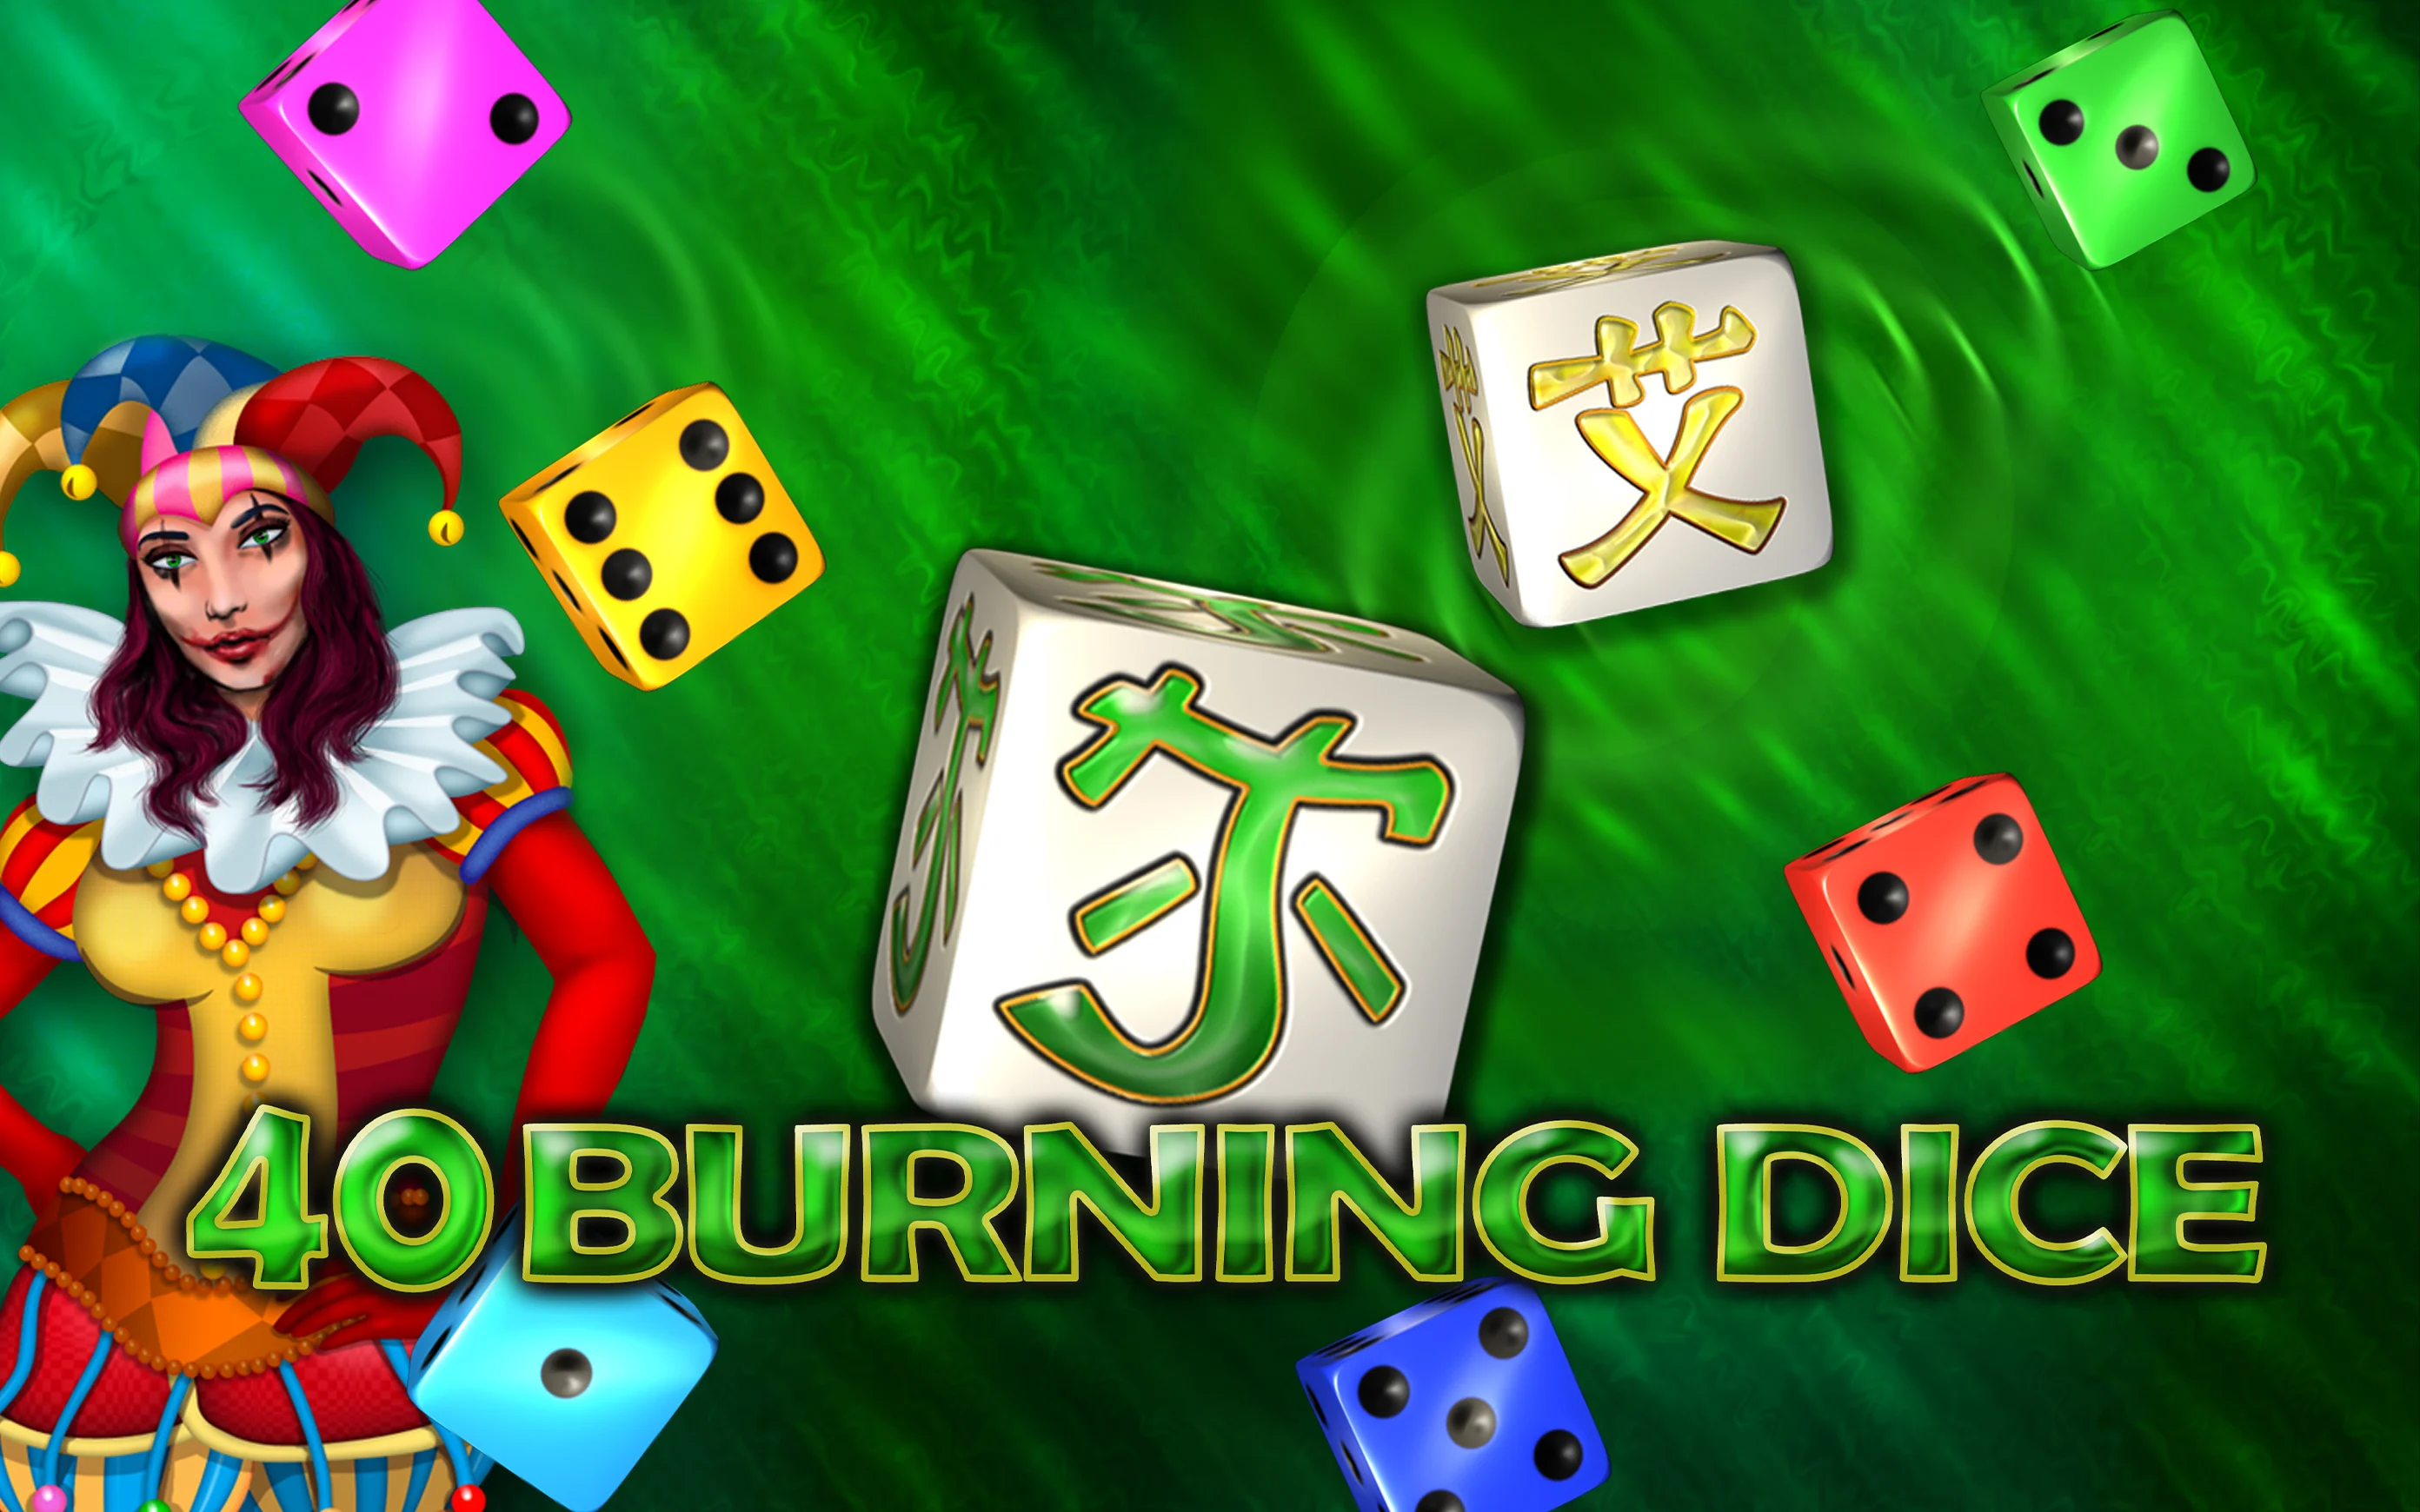 Speel 40 Burning Dice op Starcasino.be online casino